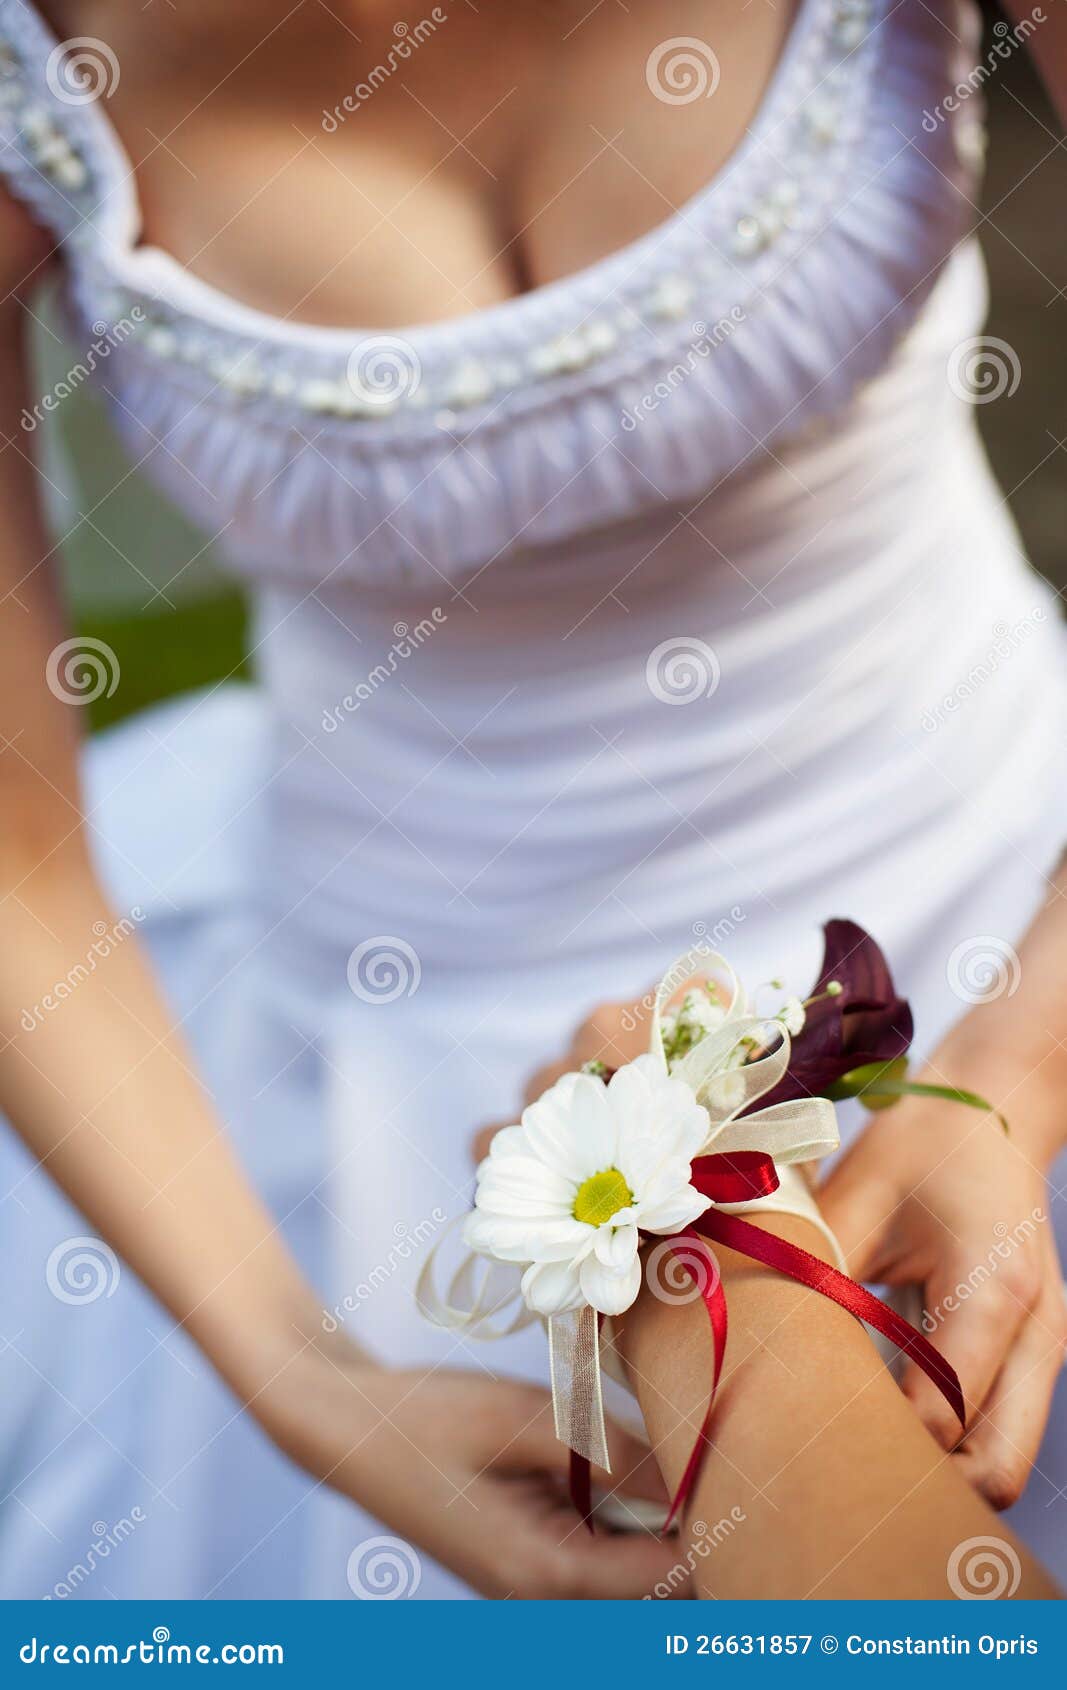 Wedding Decoration Royalty Free Stock Photography - Image: 26631857